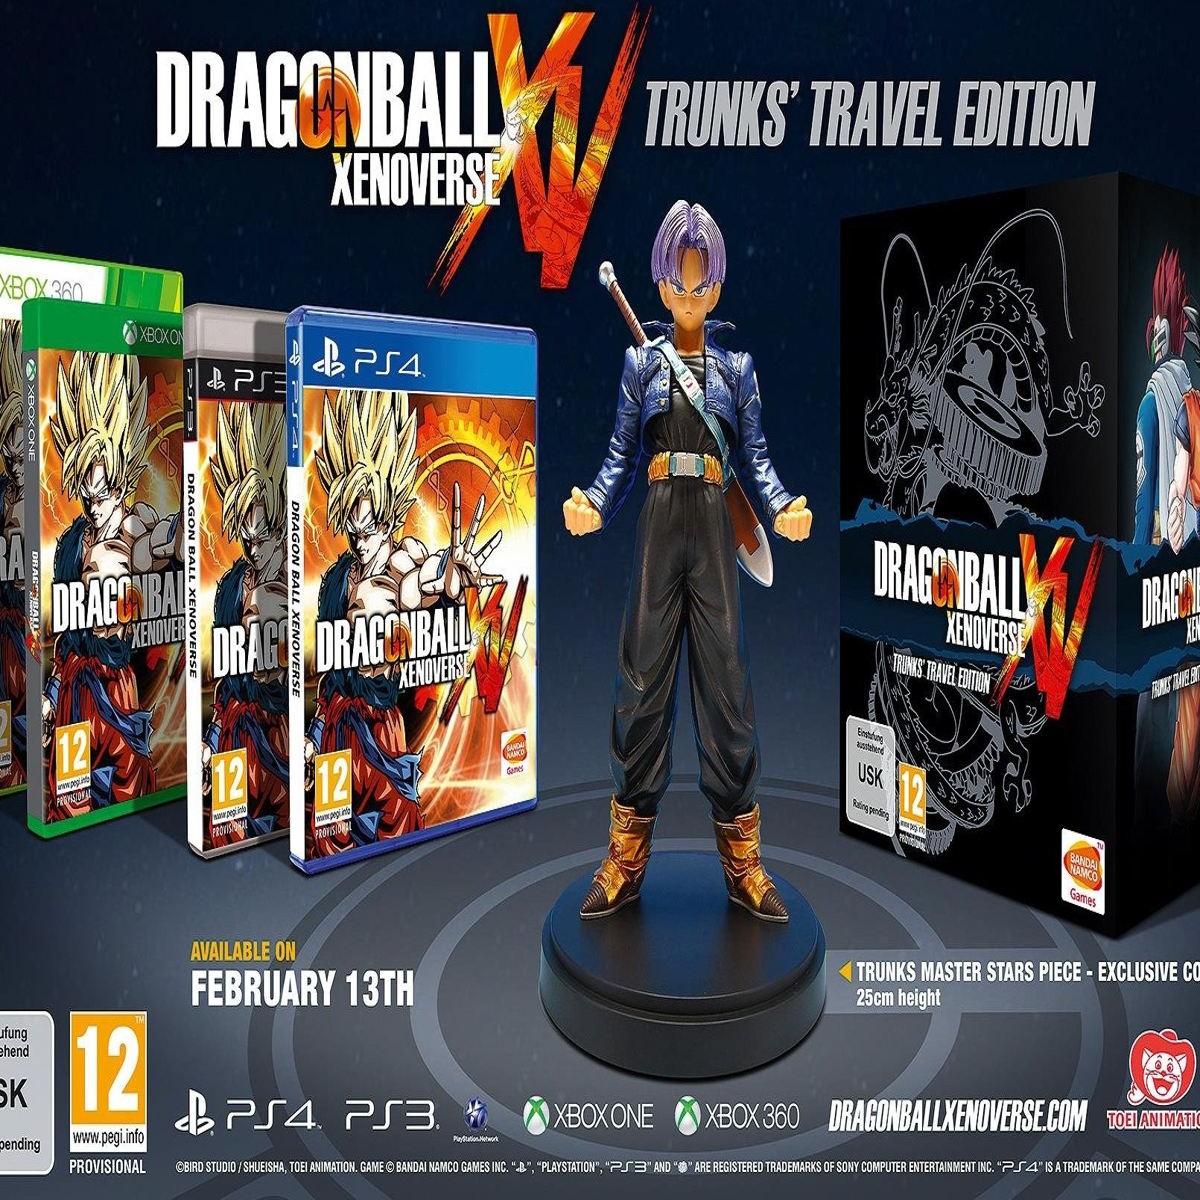  Dragon Ball Xenoverse - PlayStation 4 : Bandai Namco